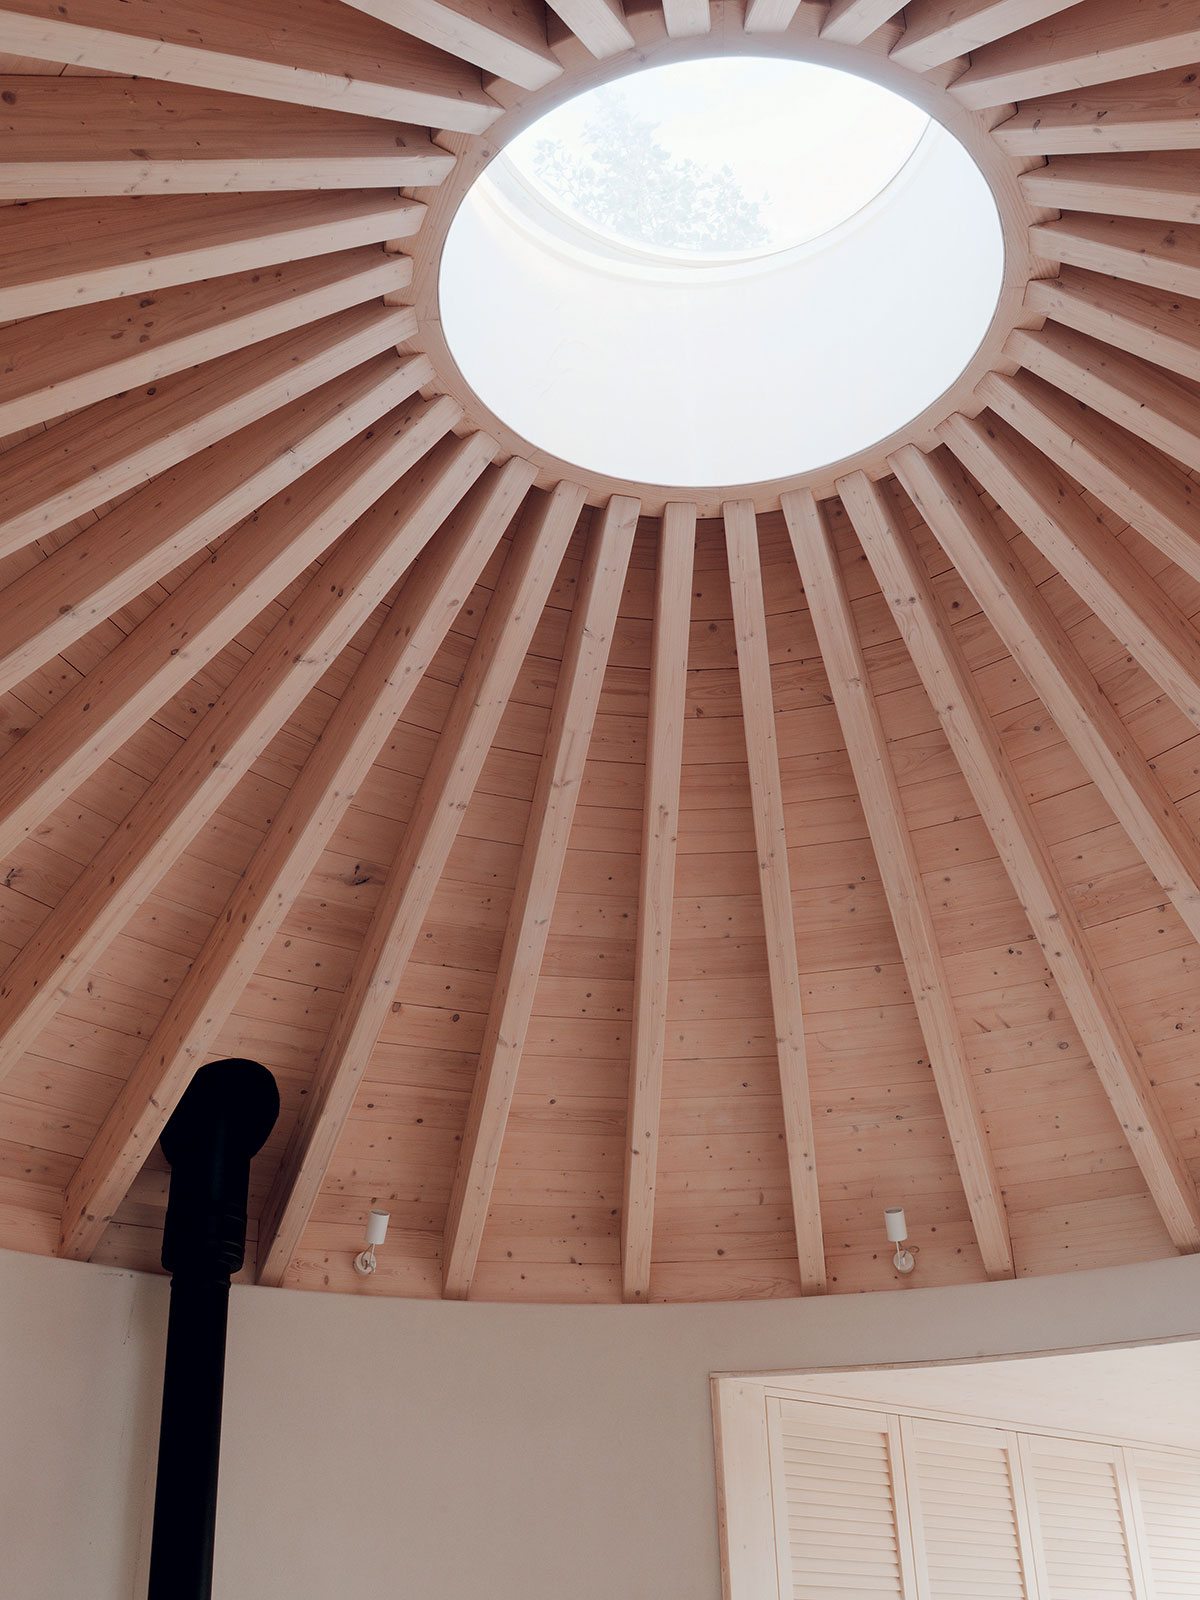 stredným prvkom centrálneho priestoru je kupolový svetlík z polykarbonátu ktorý je na kruhovom venci z lepeného dreva.